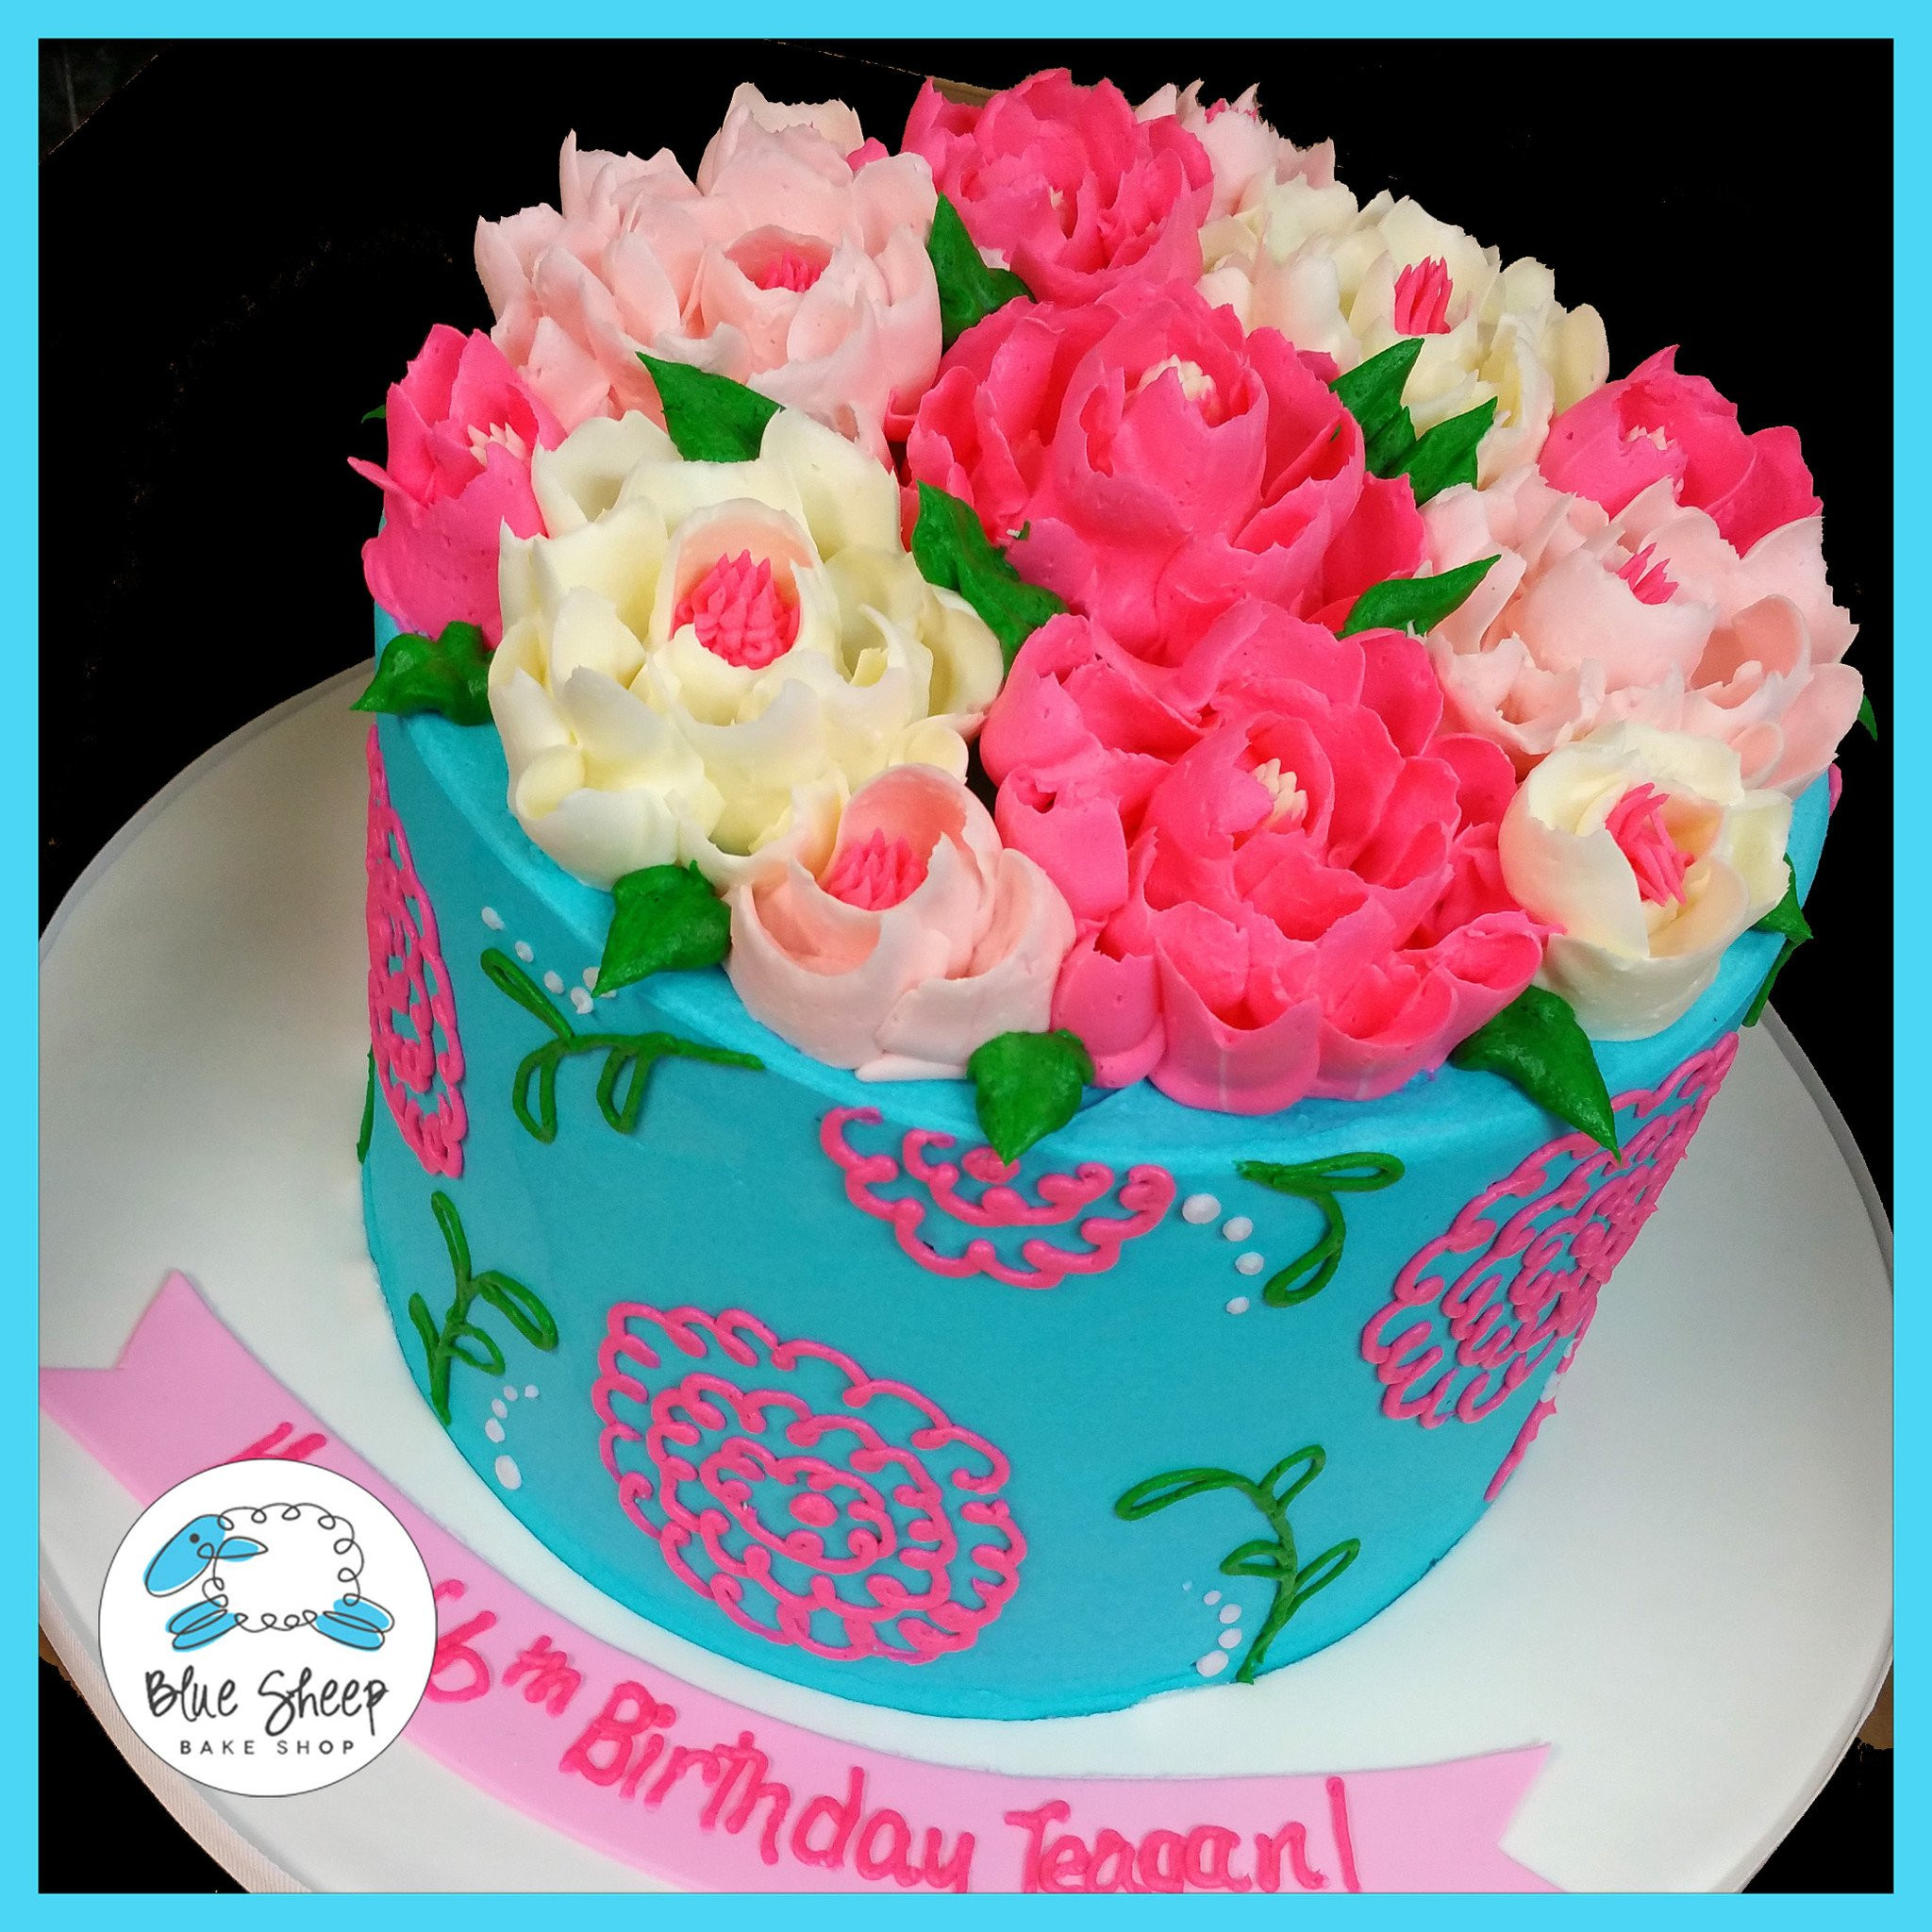 Buttercream Birthday Cakes
 Ribbon Flower Buttercream Birthday Cake – Blue Sheep Bake Shop